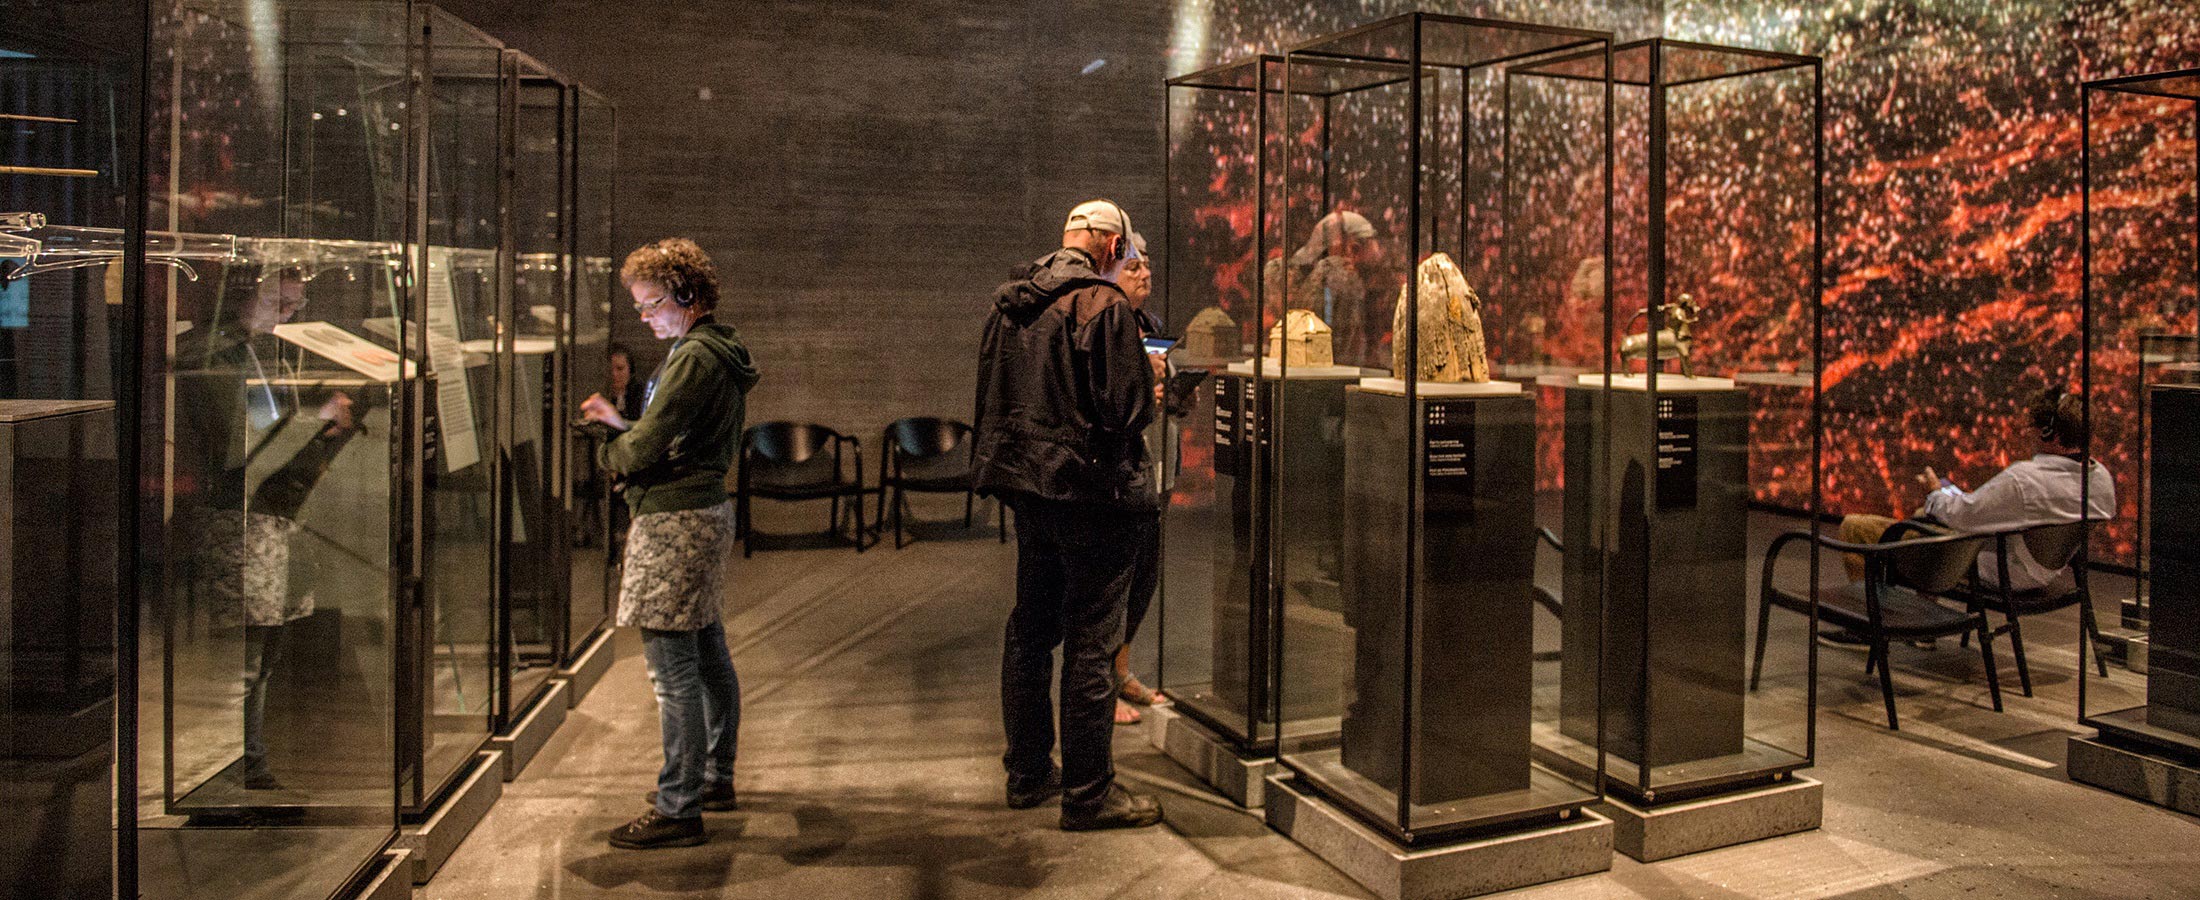 Besucher mit dem Audioguide schauen sich die Ausstellung im Burgzentrum Vordingborg